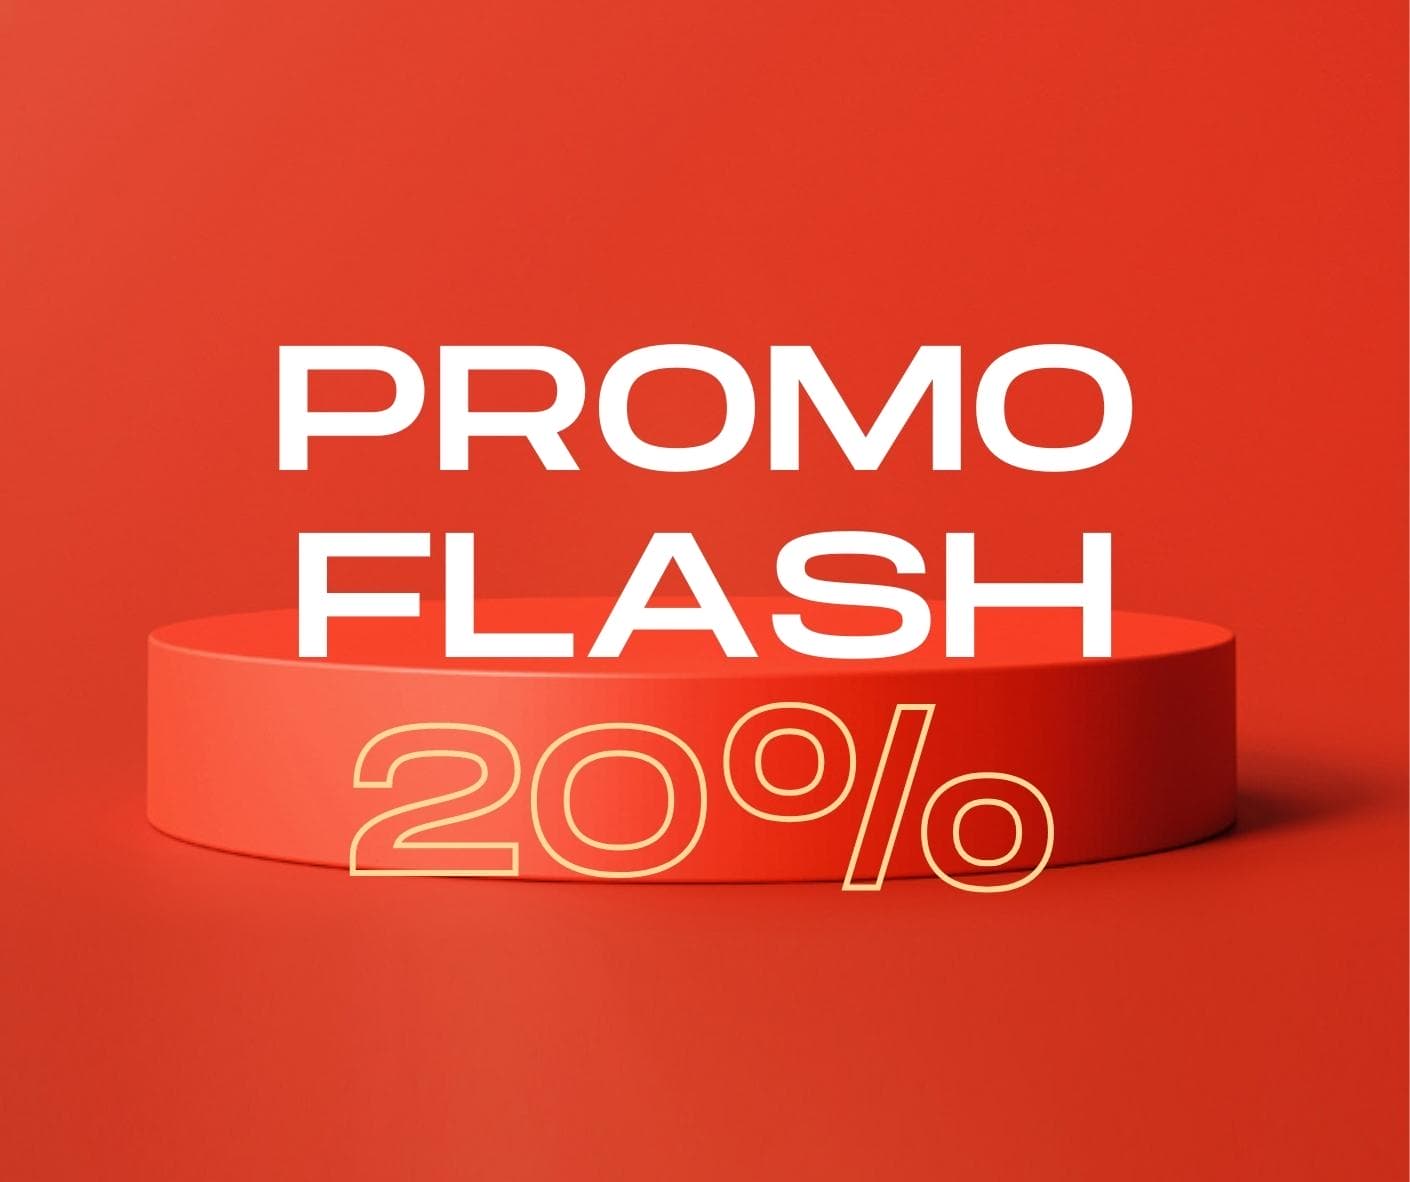 Promo Flash 20% de descuento